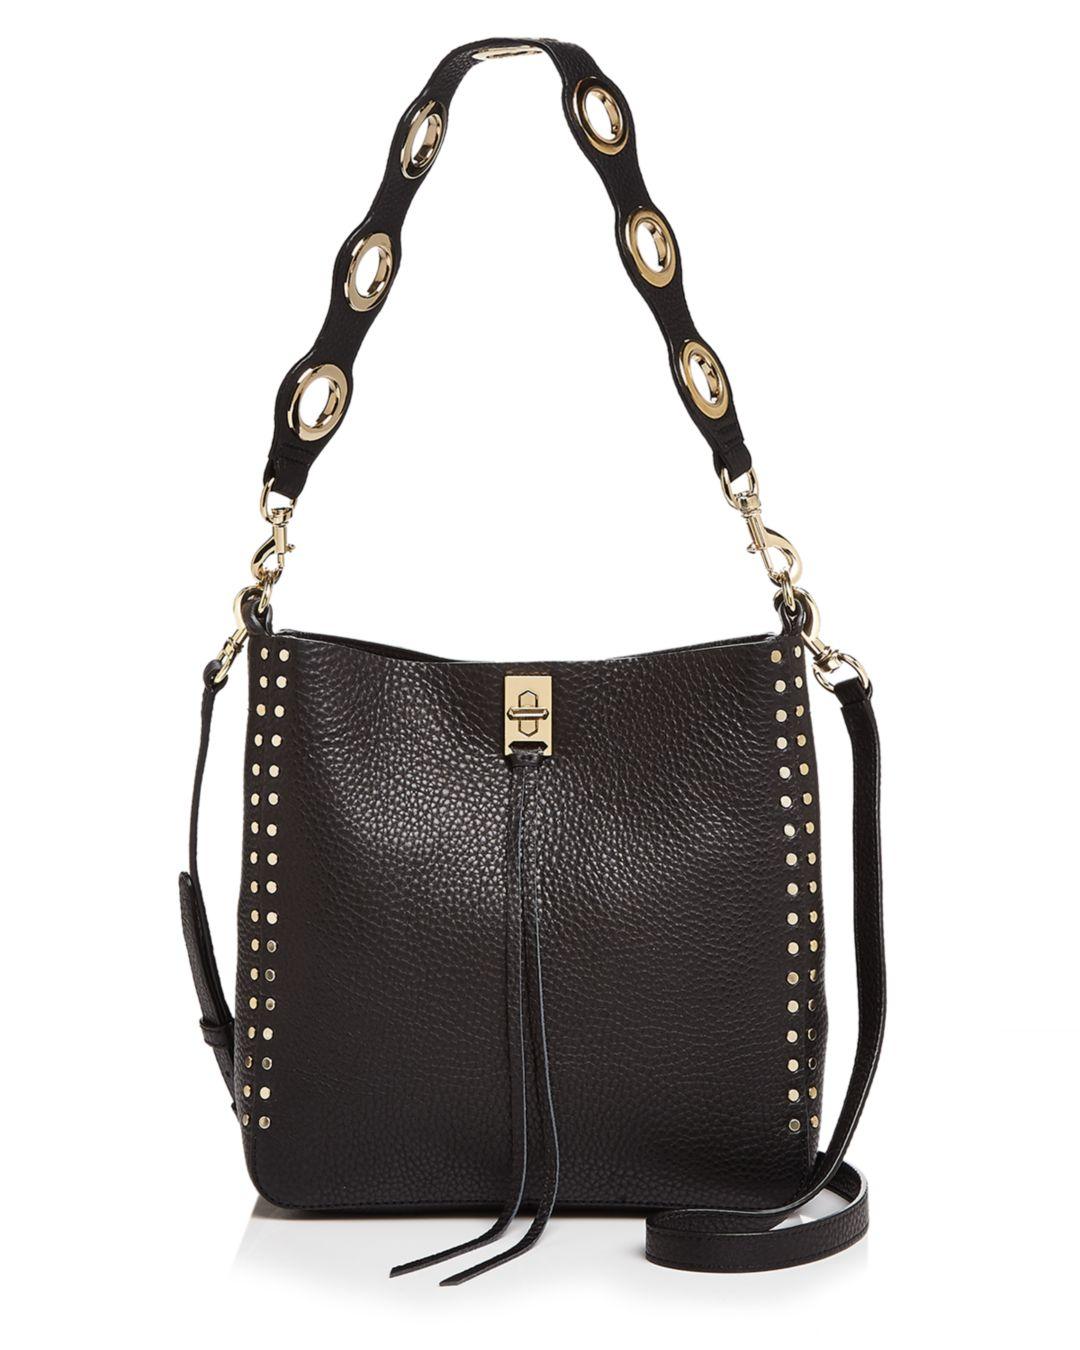 Rebecca Minkoff Leather Darren Small Studded Shoulder Bag in Black/Gold ...